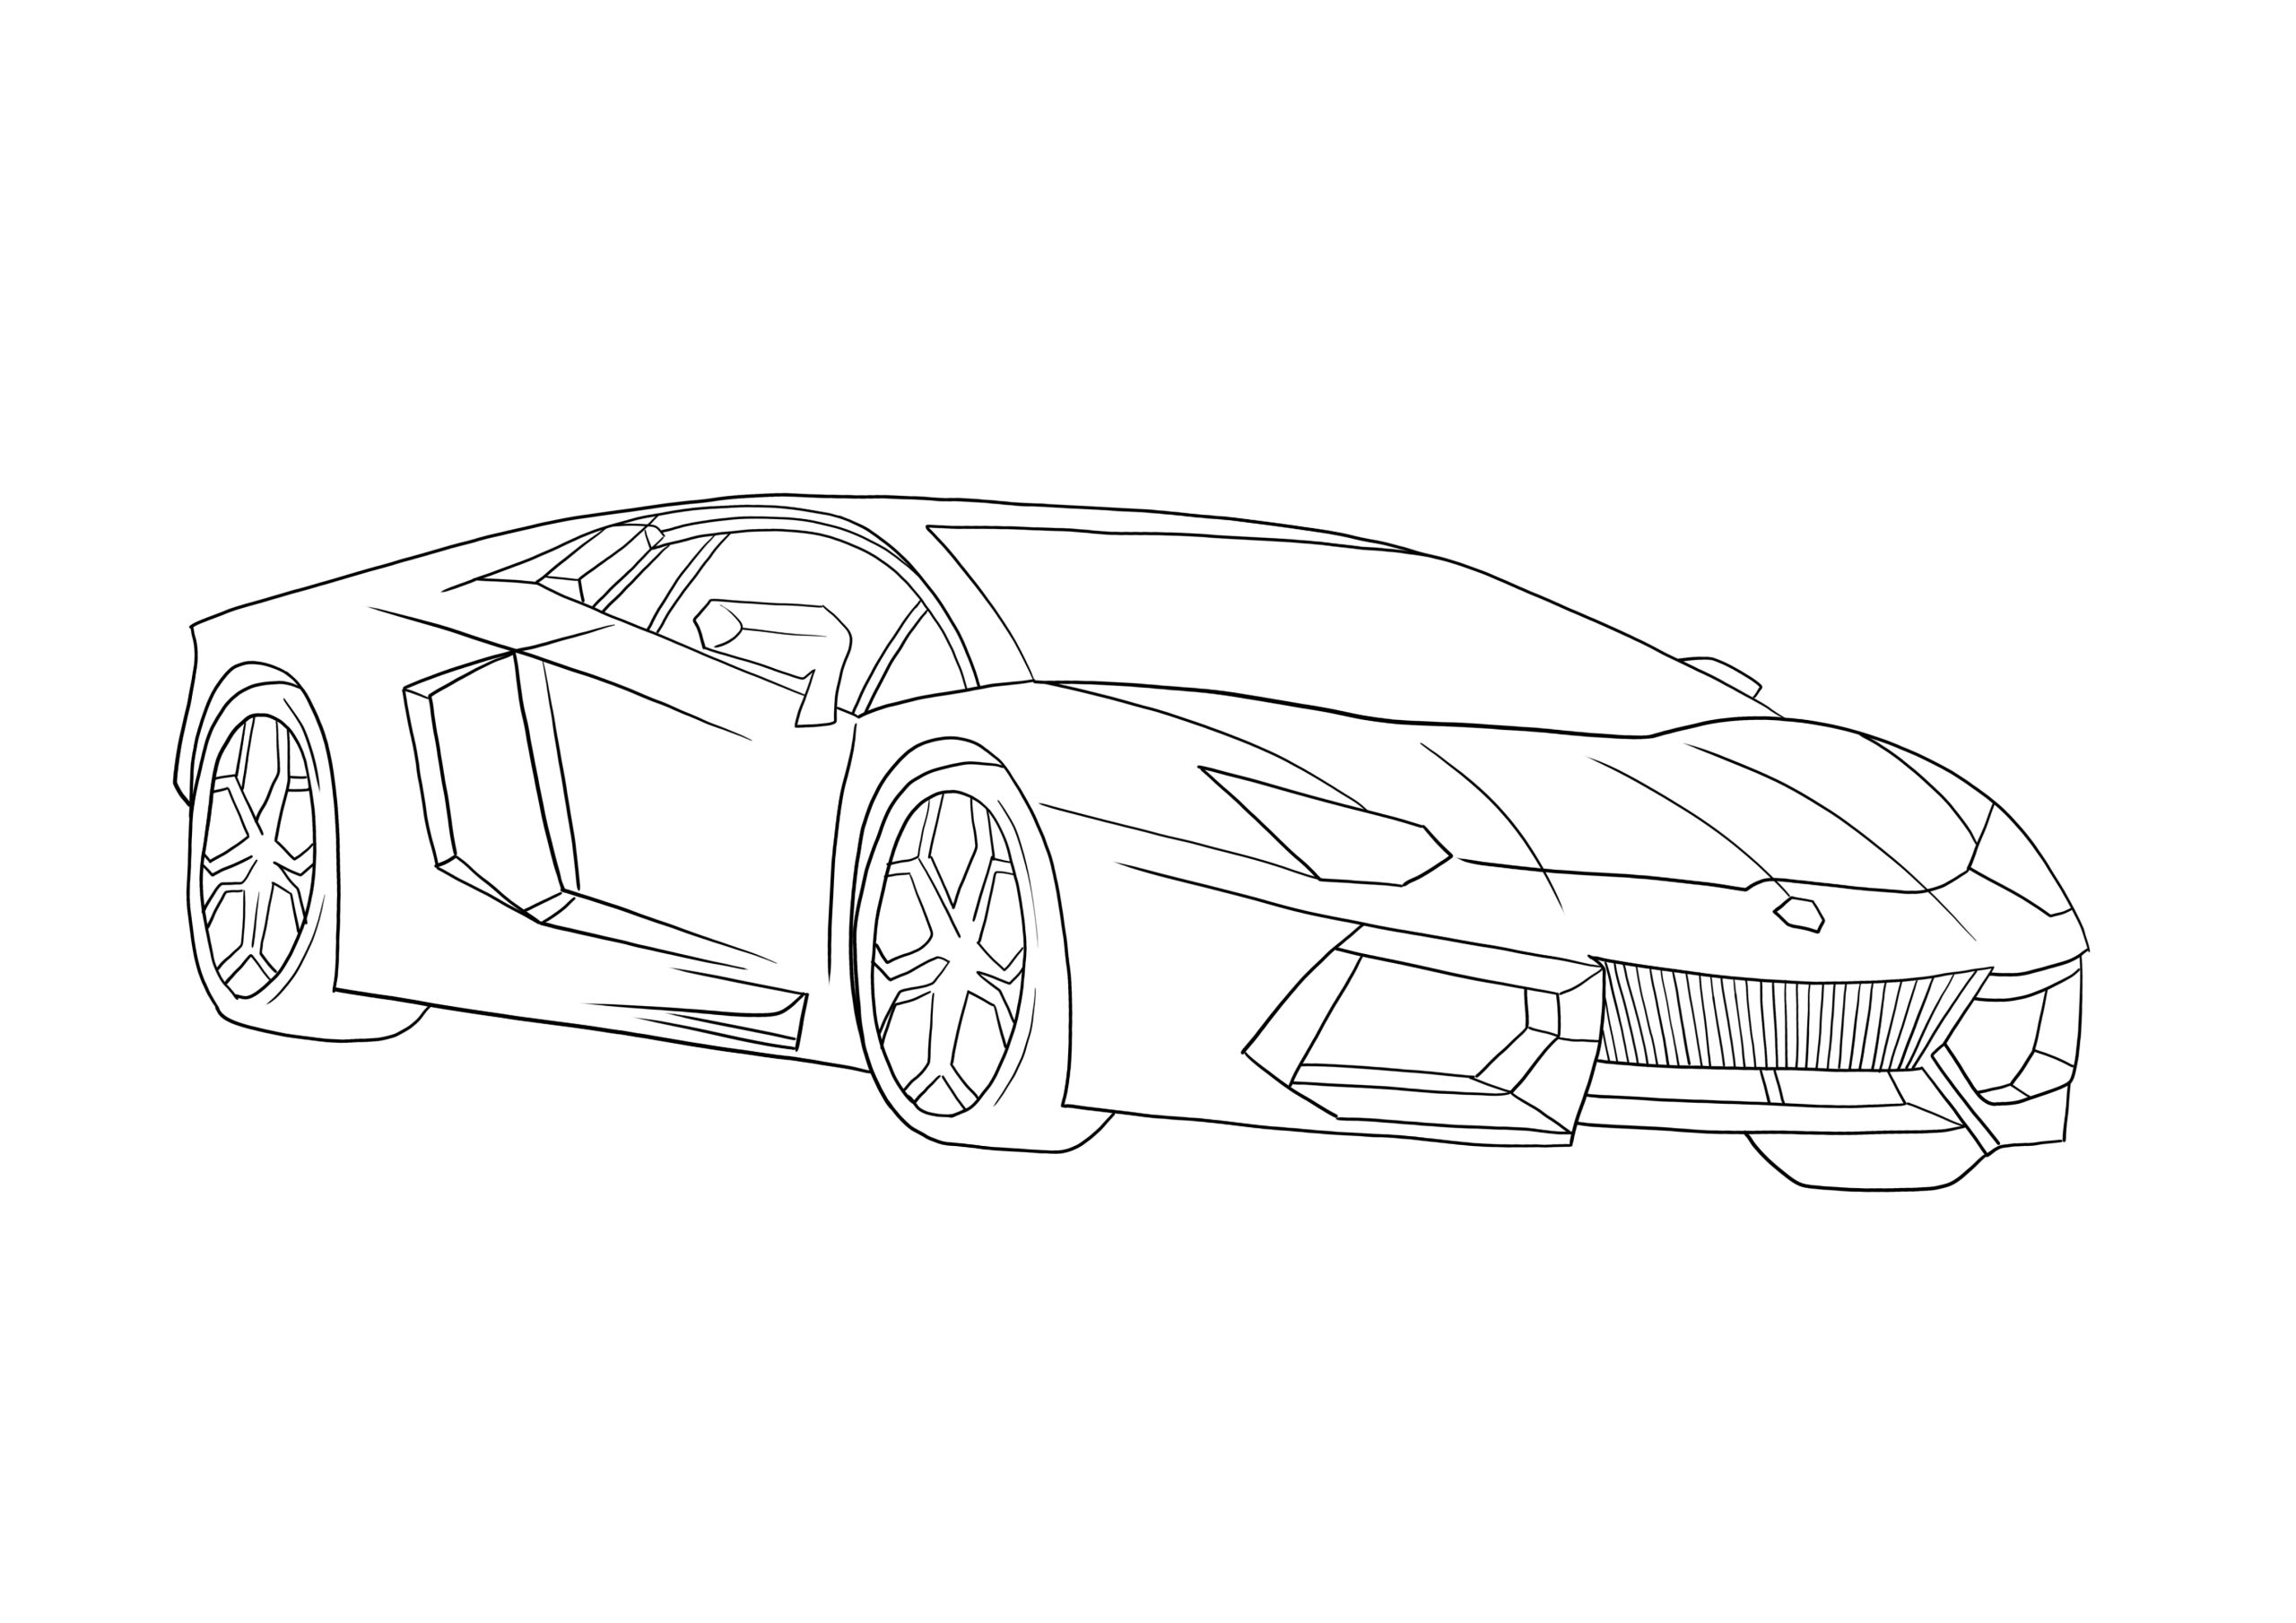 Lamborghini Aventador Kleurplaat